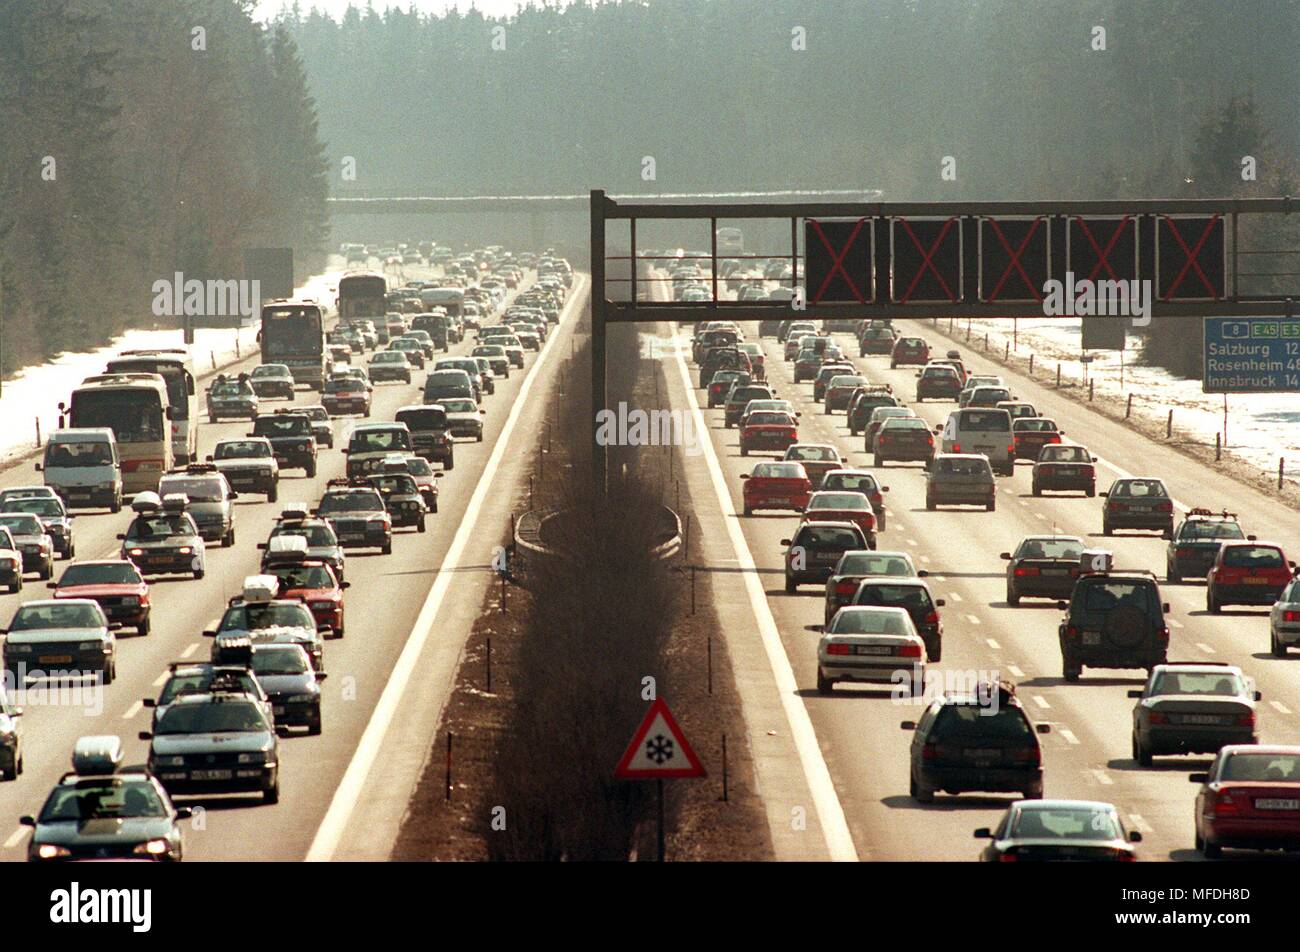 Die 'Shift' unter den Winterurlauber led am 24.2.1996 auf der Autobahn A8 München-Salzburg zu kilometerlangen Staus. Auch anderen bayerischen Autobahnen berichtet Behinderungen wegen der starken Verkehr. | Verwendung weltweit Stockfoto